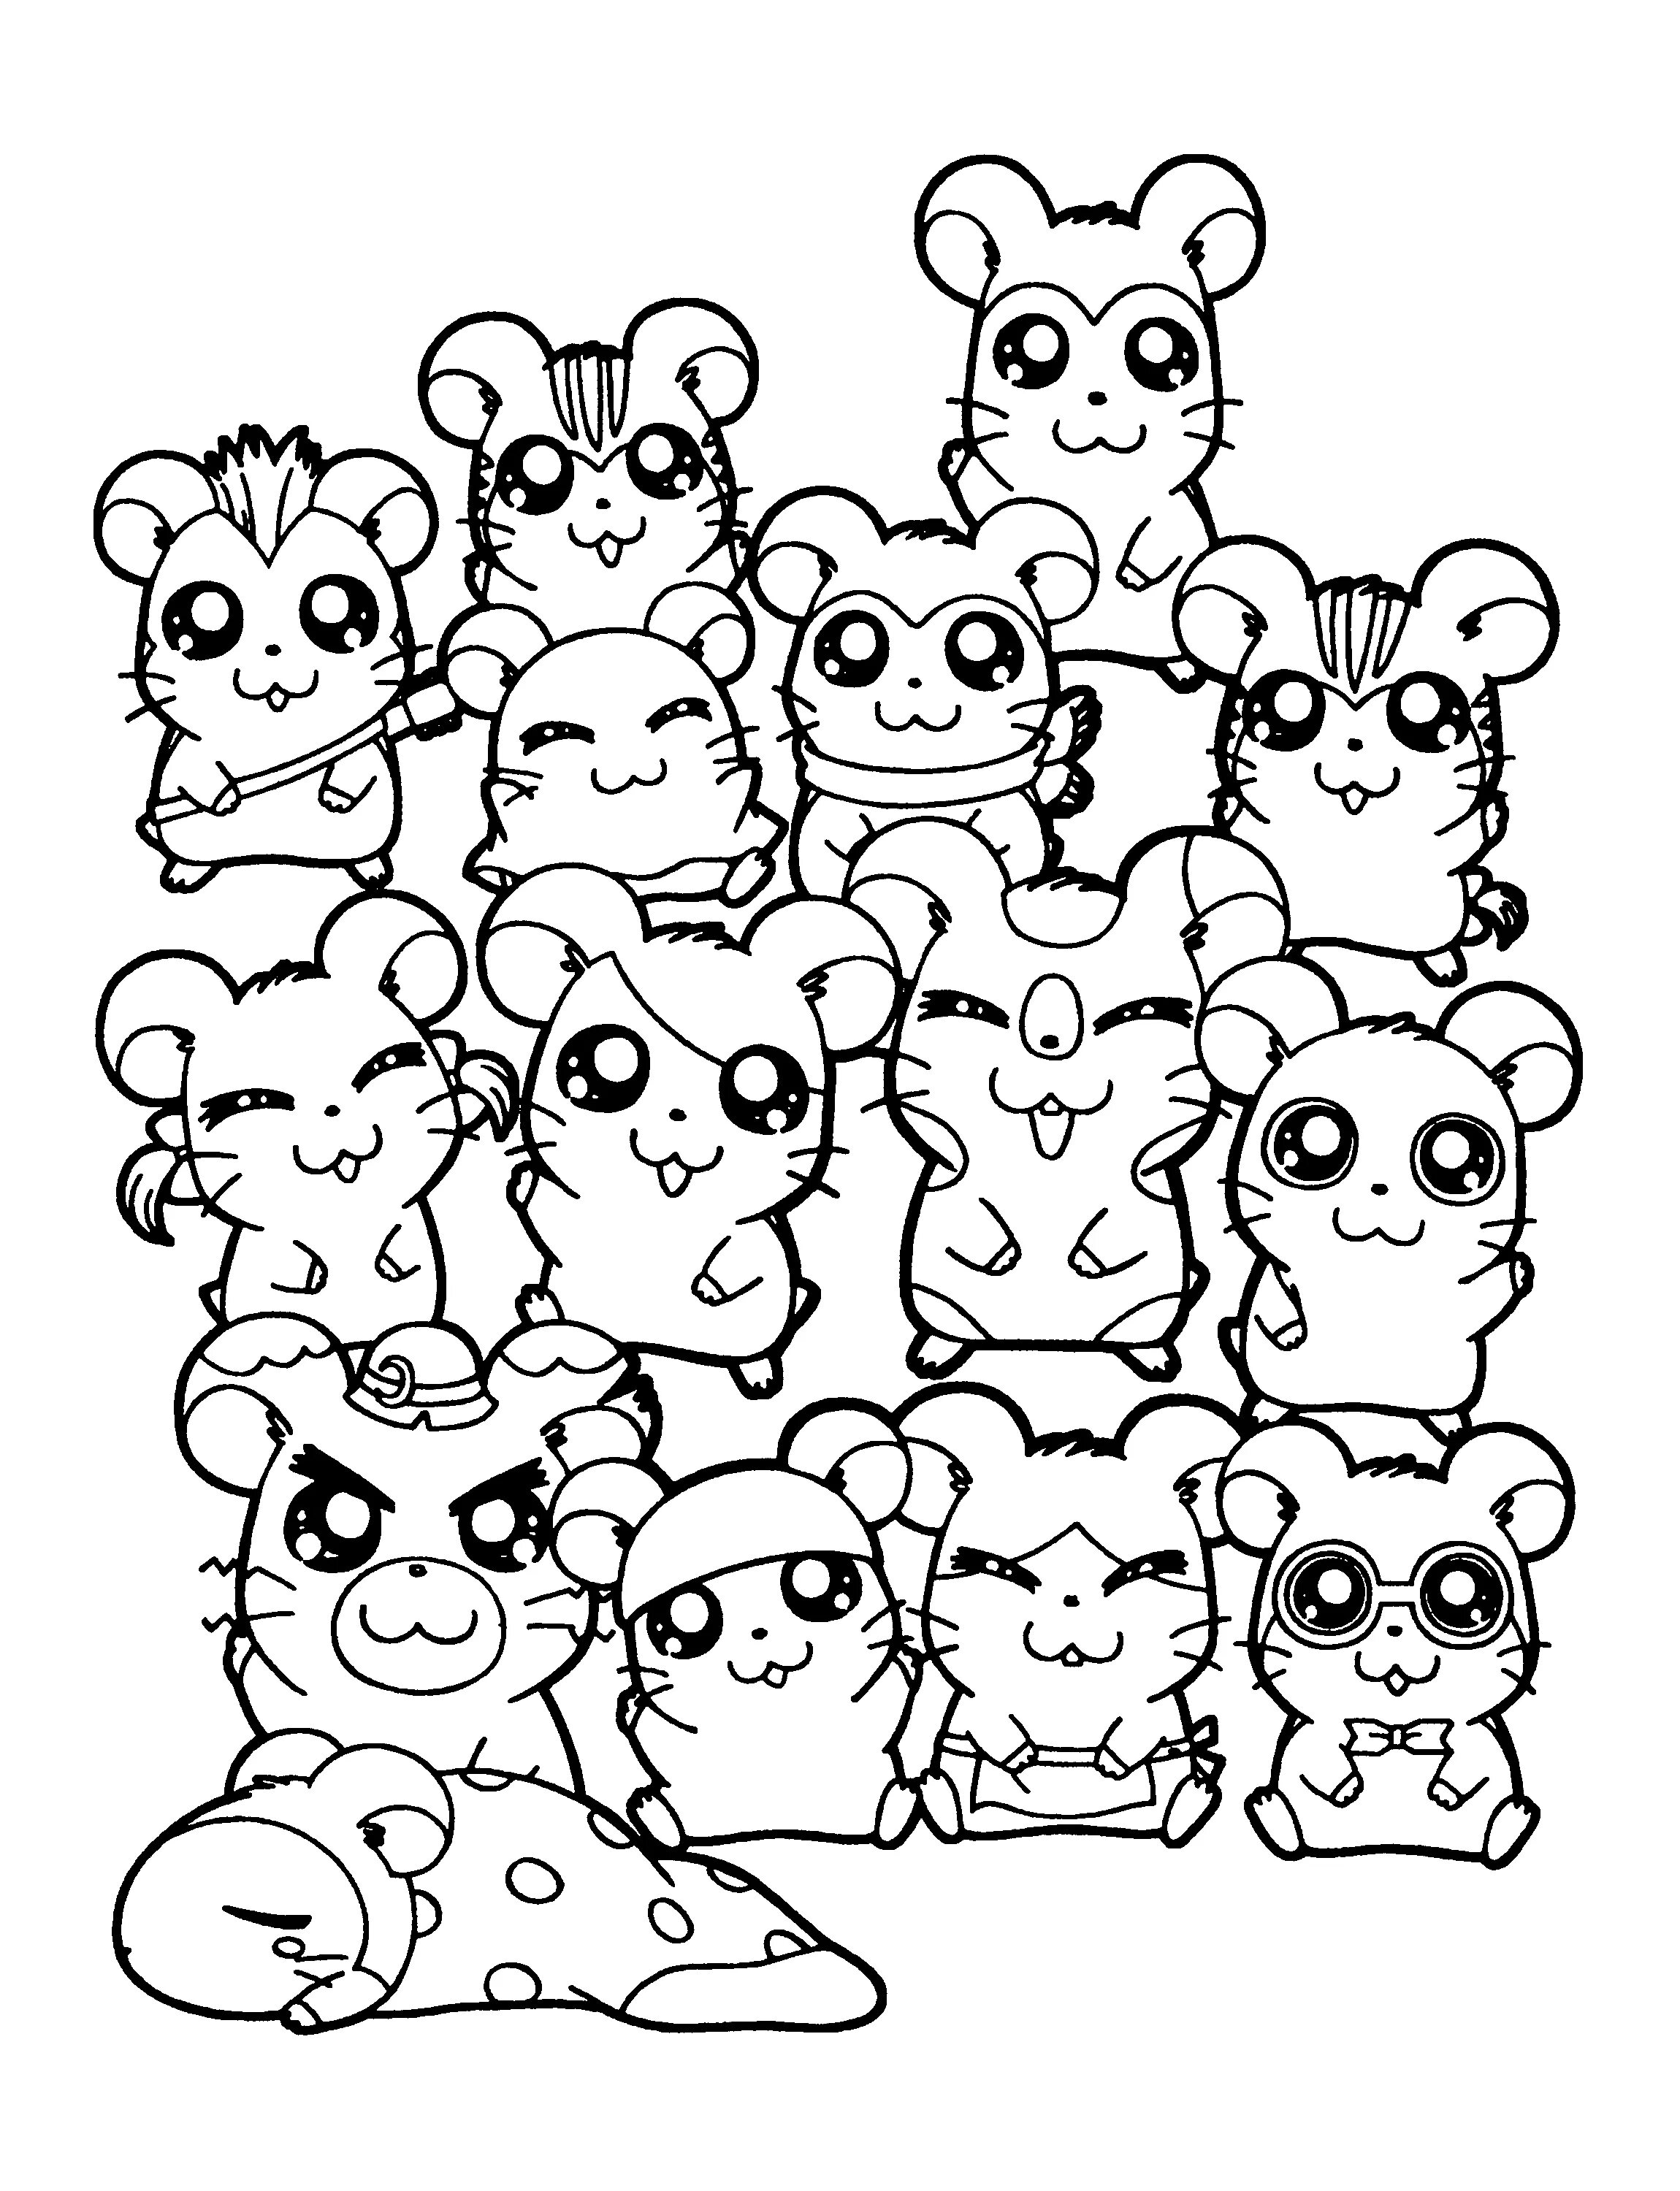 Cute hamsters #12